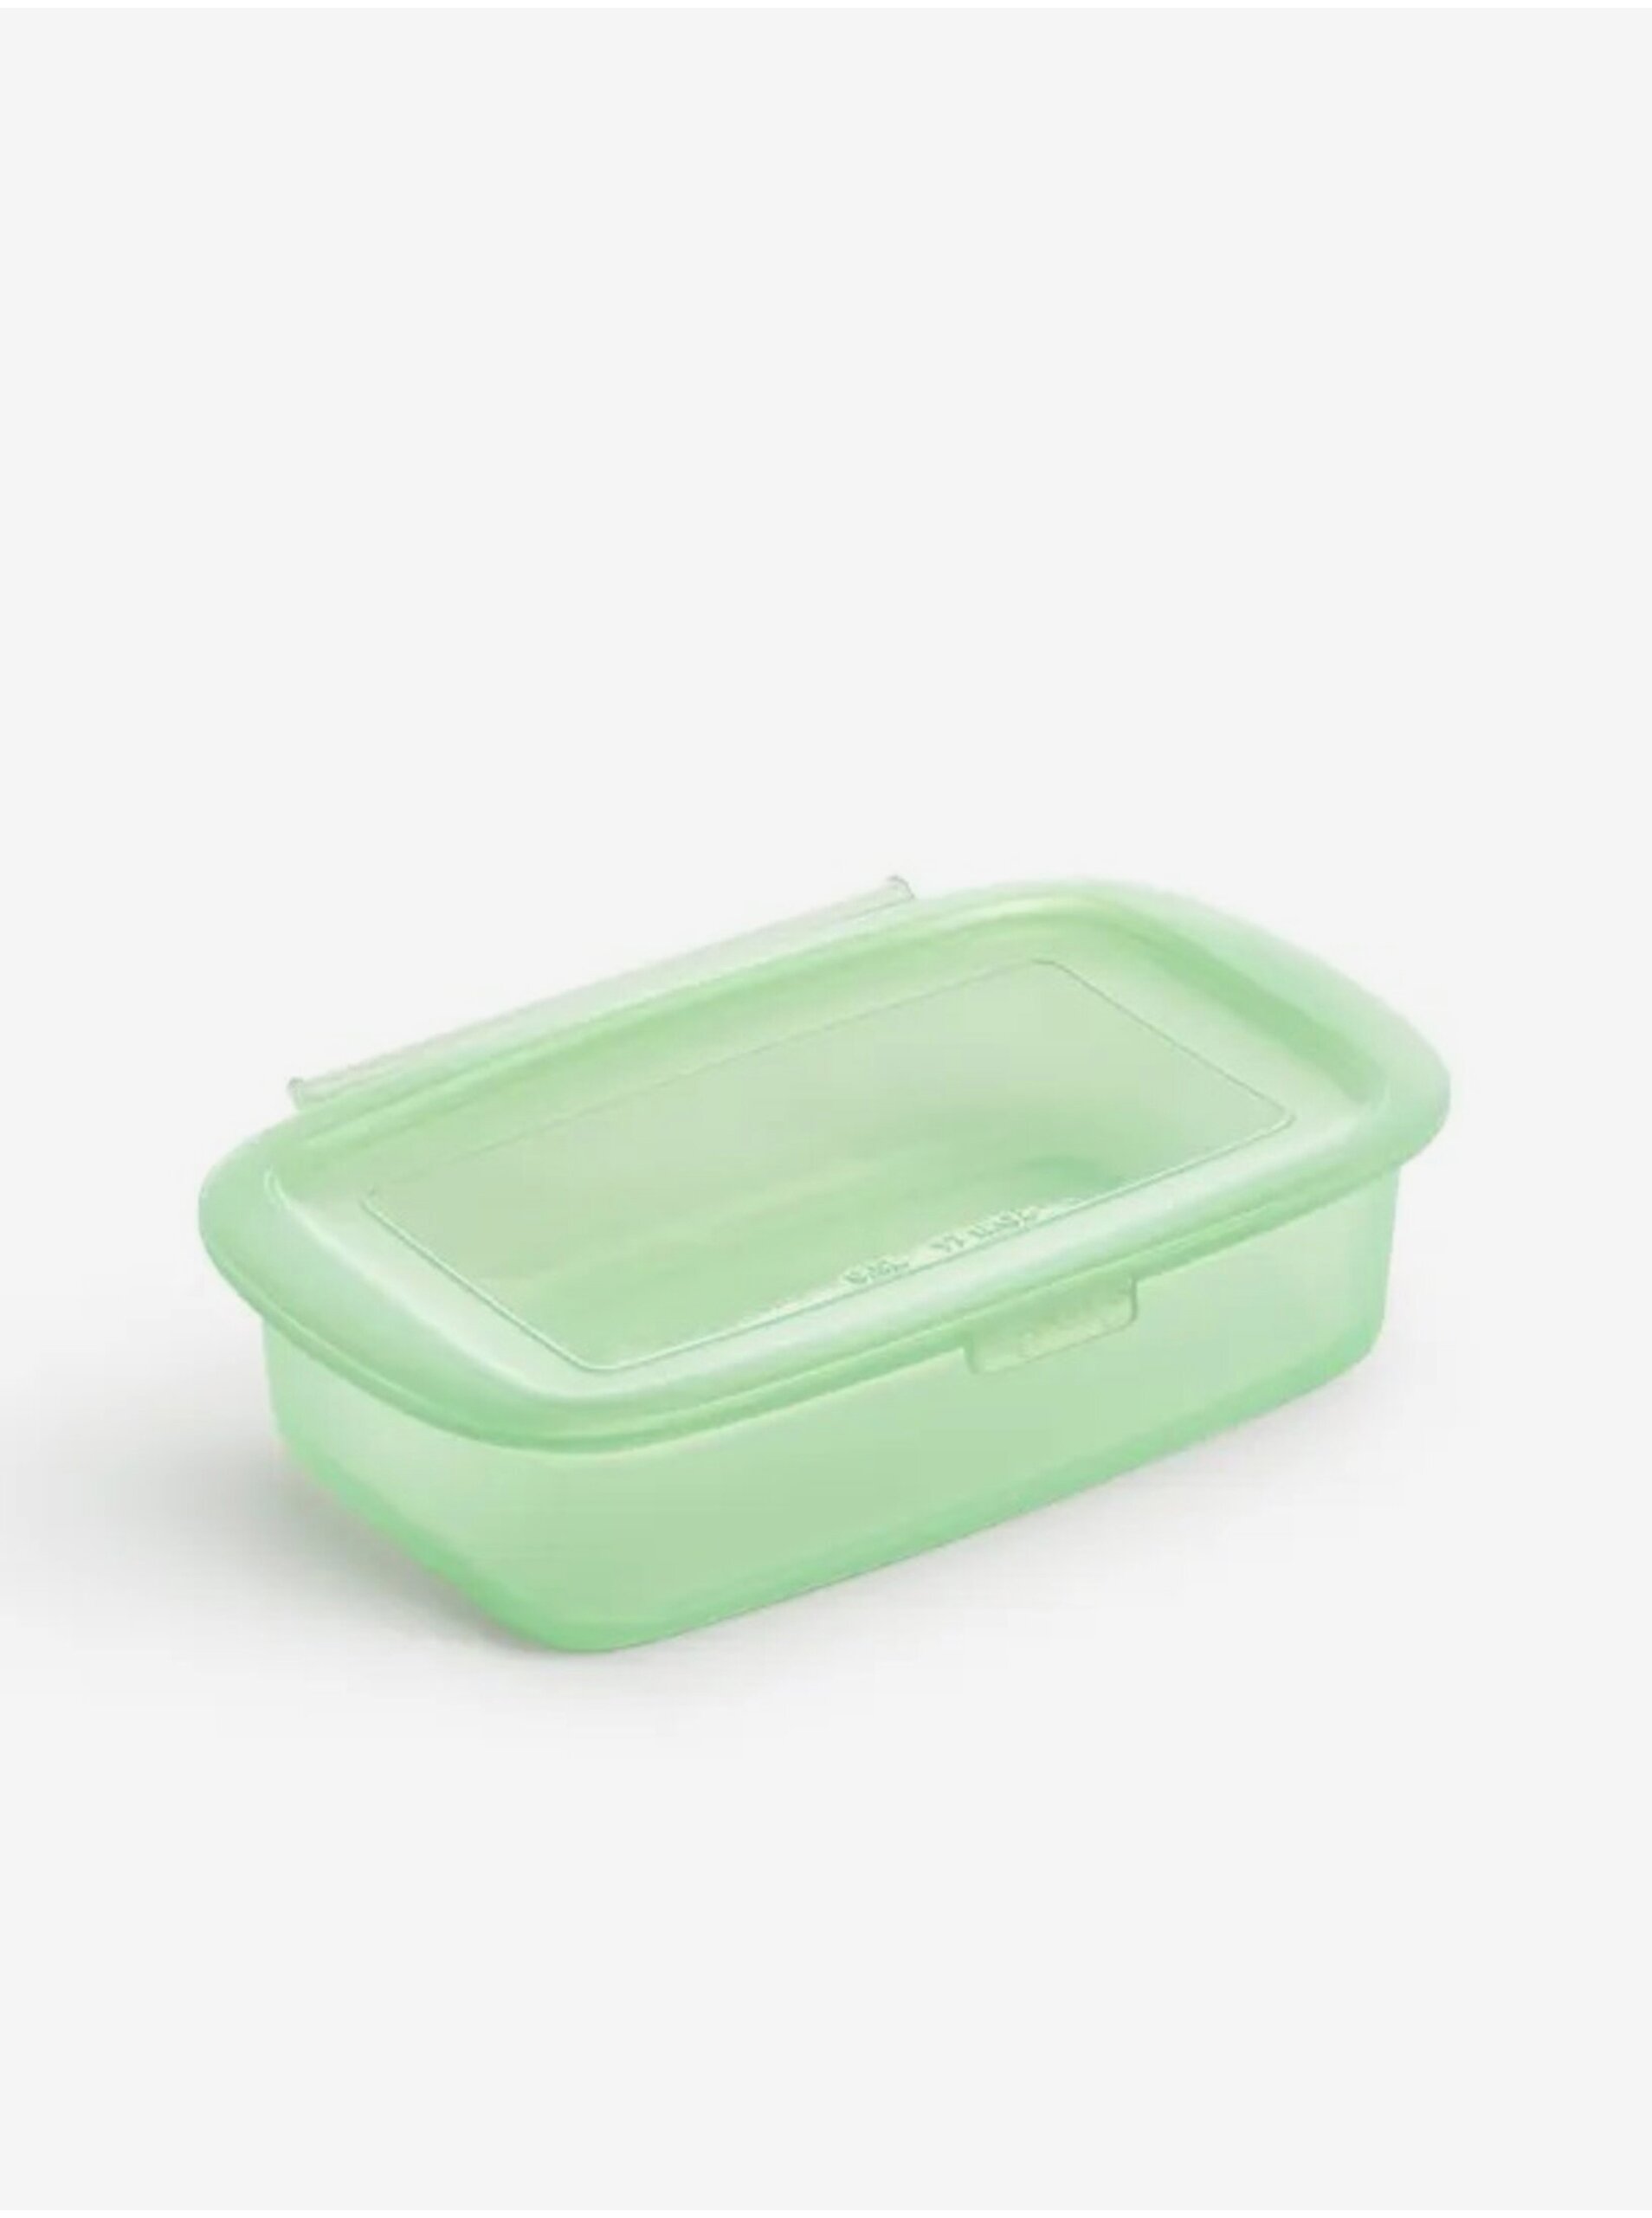 Lacno Zelený silikónový box na skladovanie potravín Lékué (500 ml)